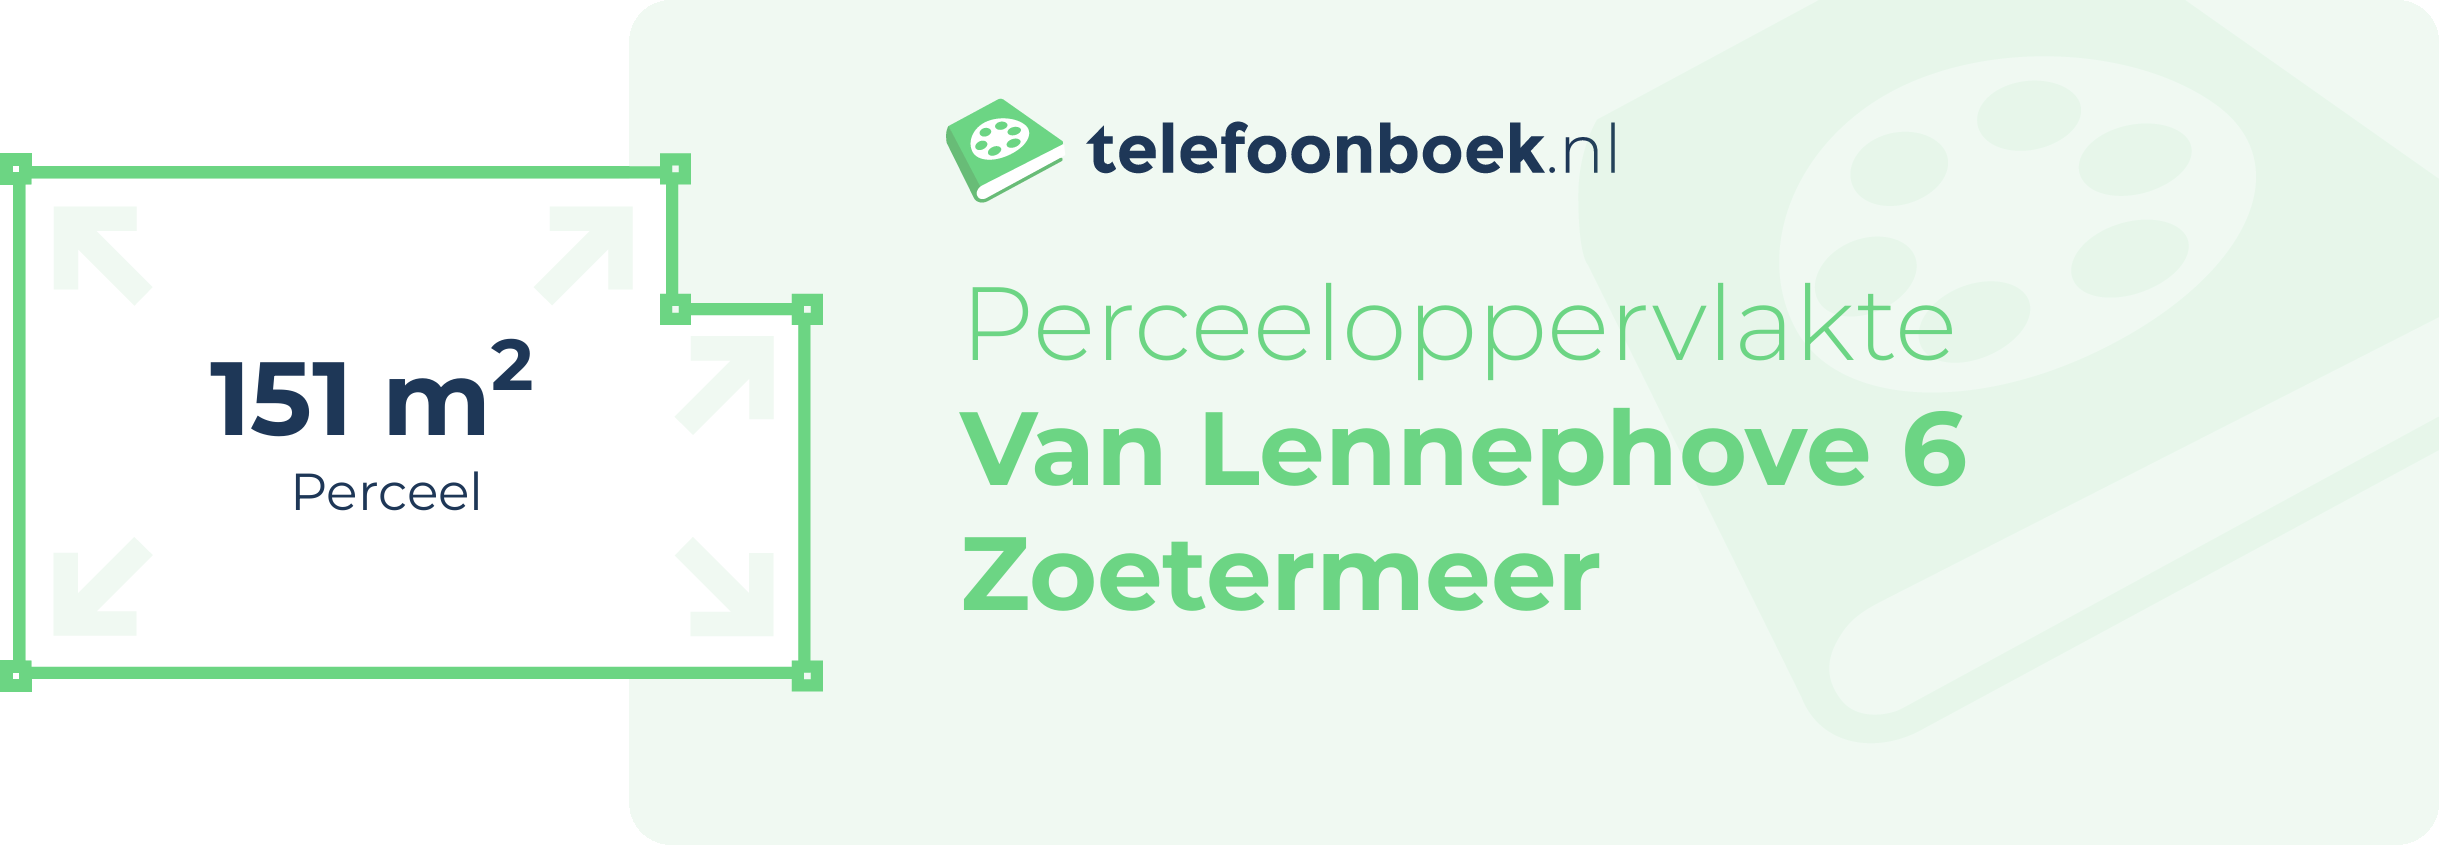 Perceeloppervlakte Van Lennephove 6 Zoetermeer